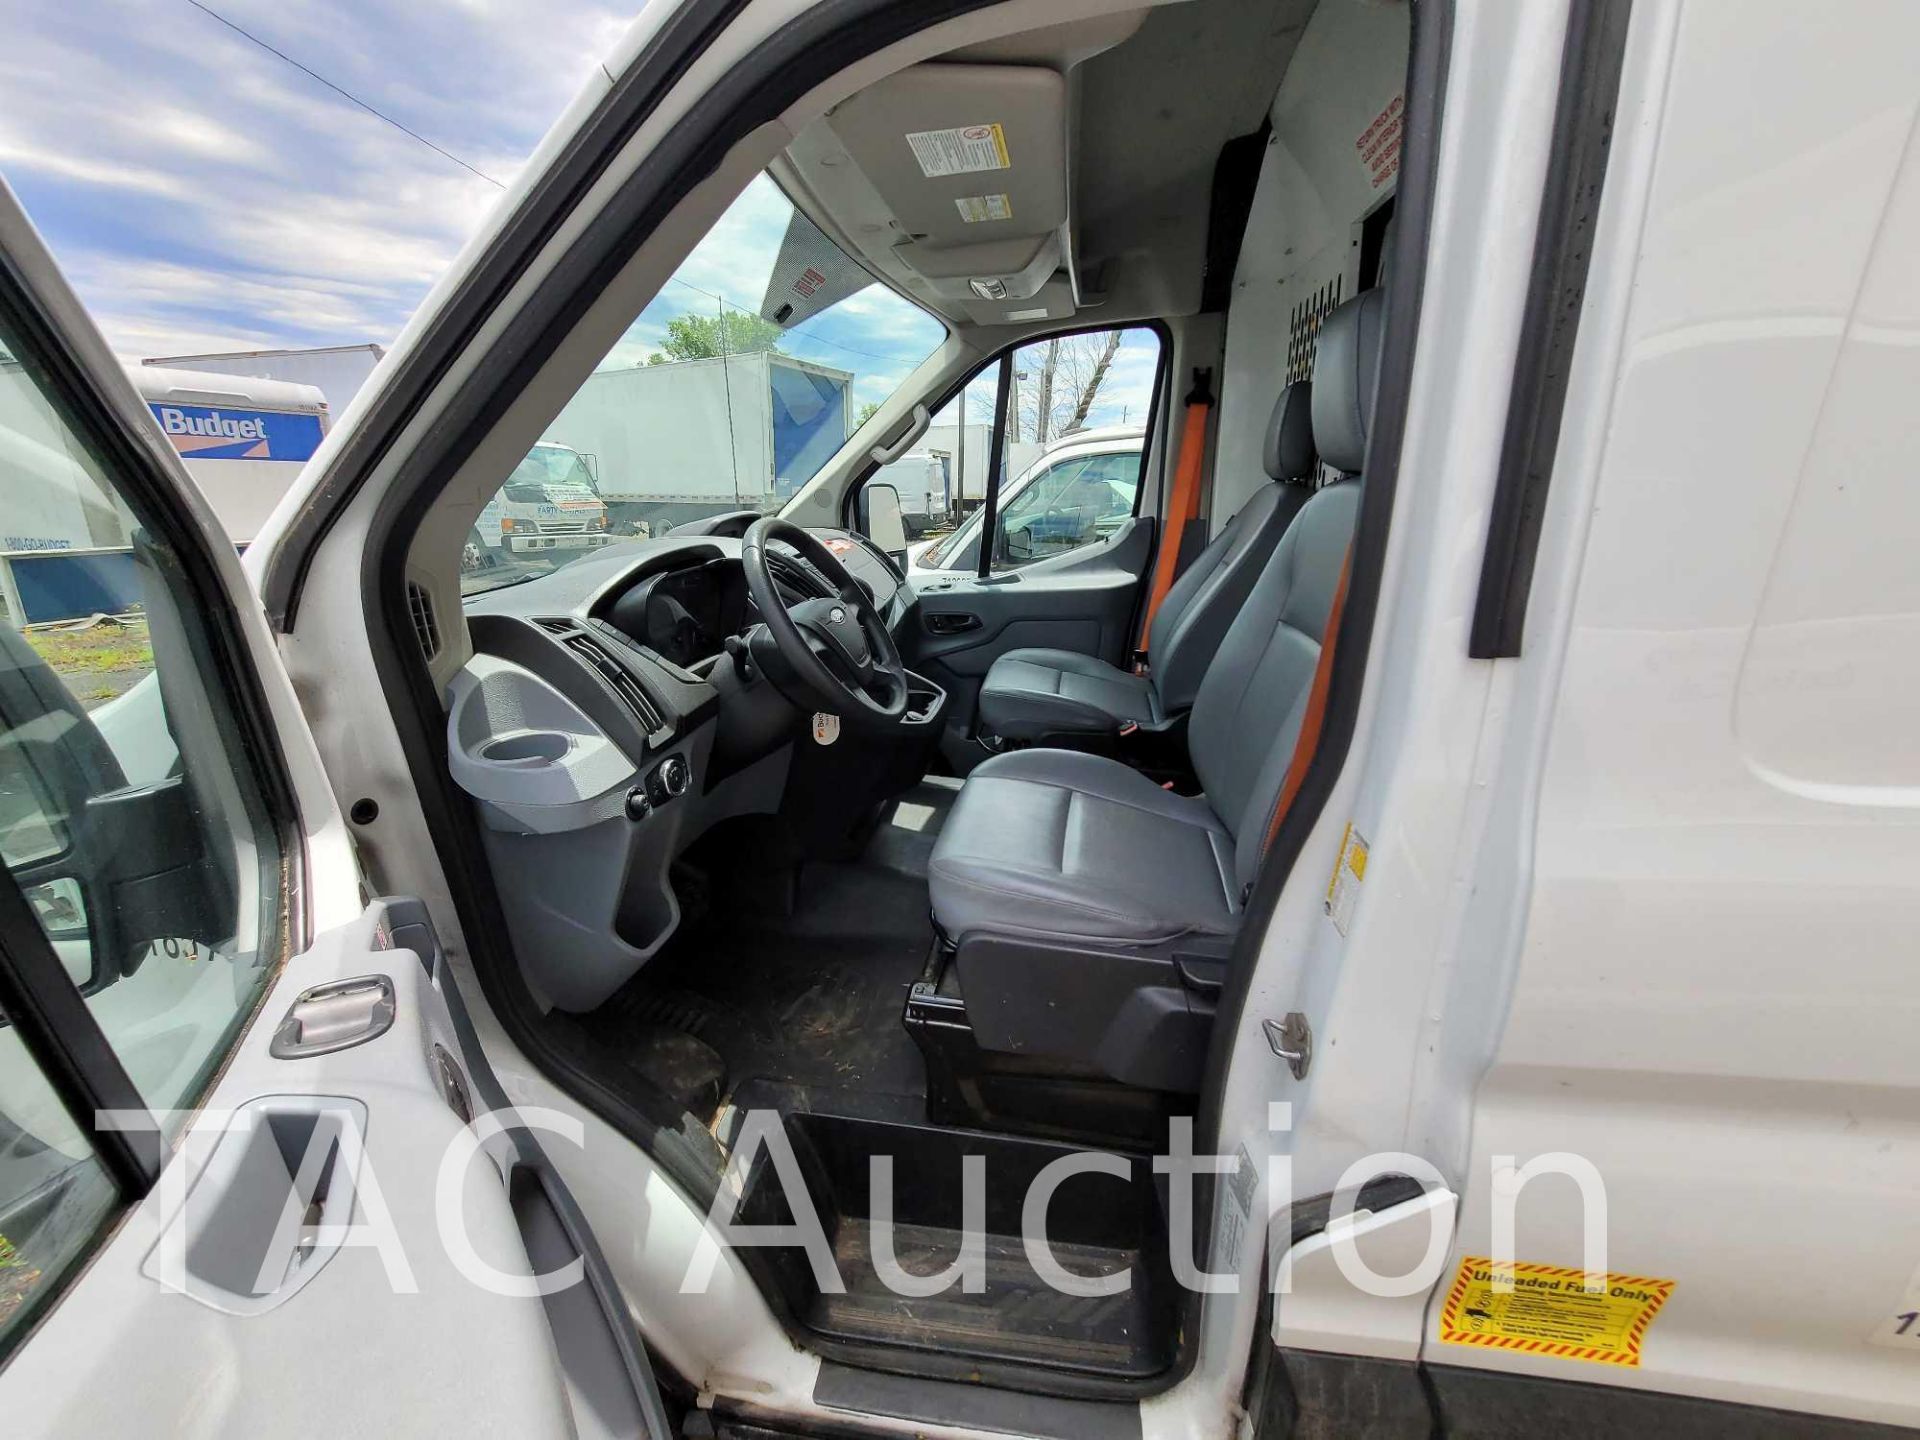 2019 Ford Transit 150 Cargo Van - Image 15 of 50